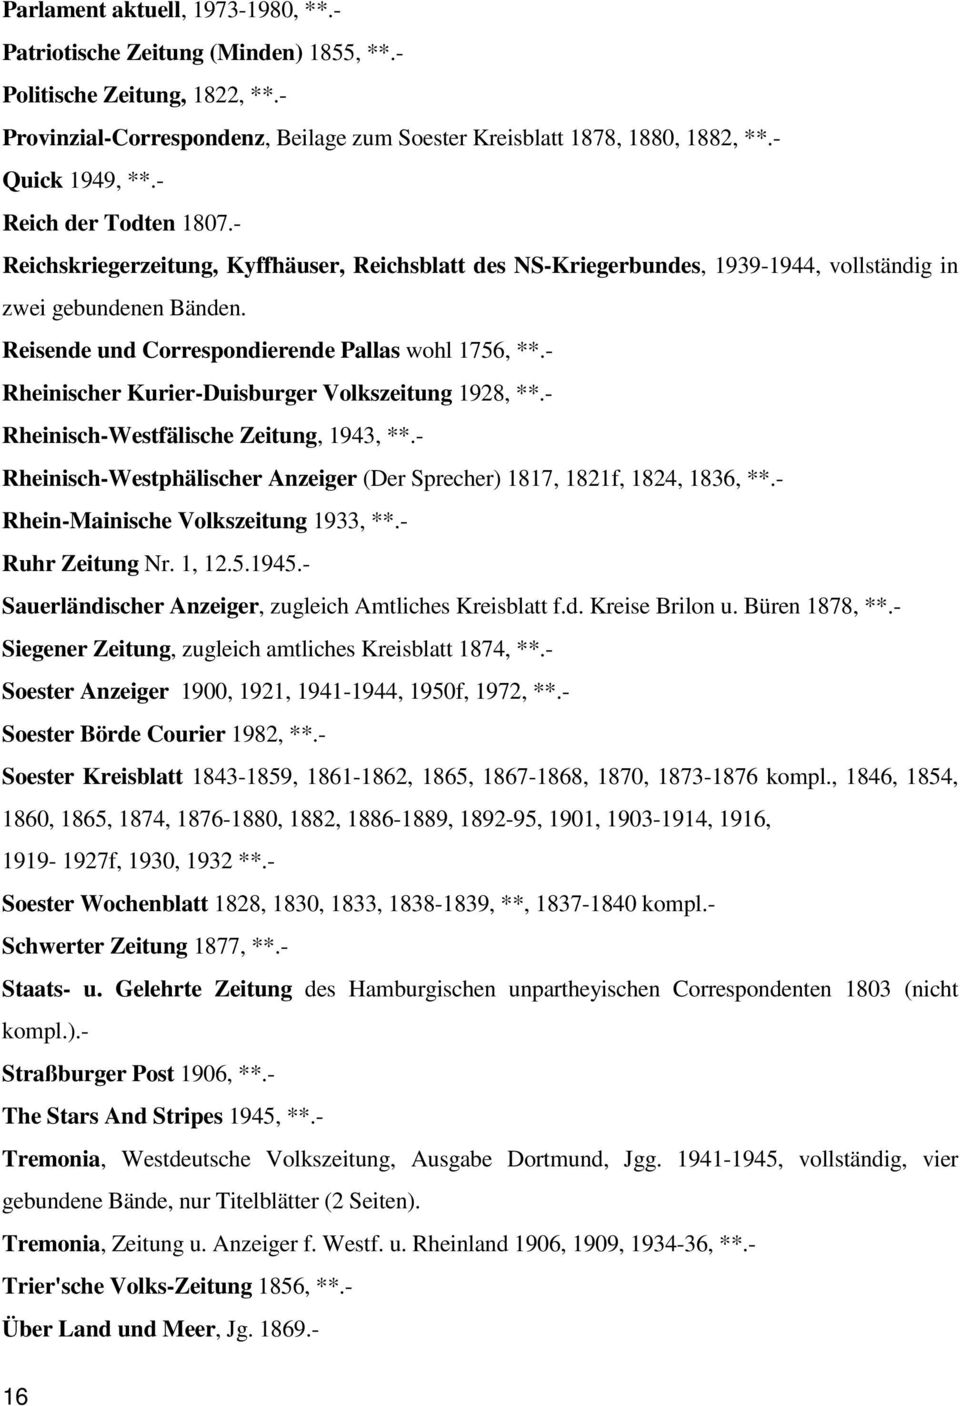 Reisende und Correspondierende Pallas wohl 1756, **.- Rheinischer Kurier-Duisburger Volkszeitung 1928, **.- Rheinisch-Westfälische Zeitung, 1943, **.